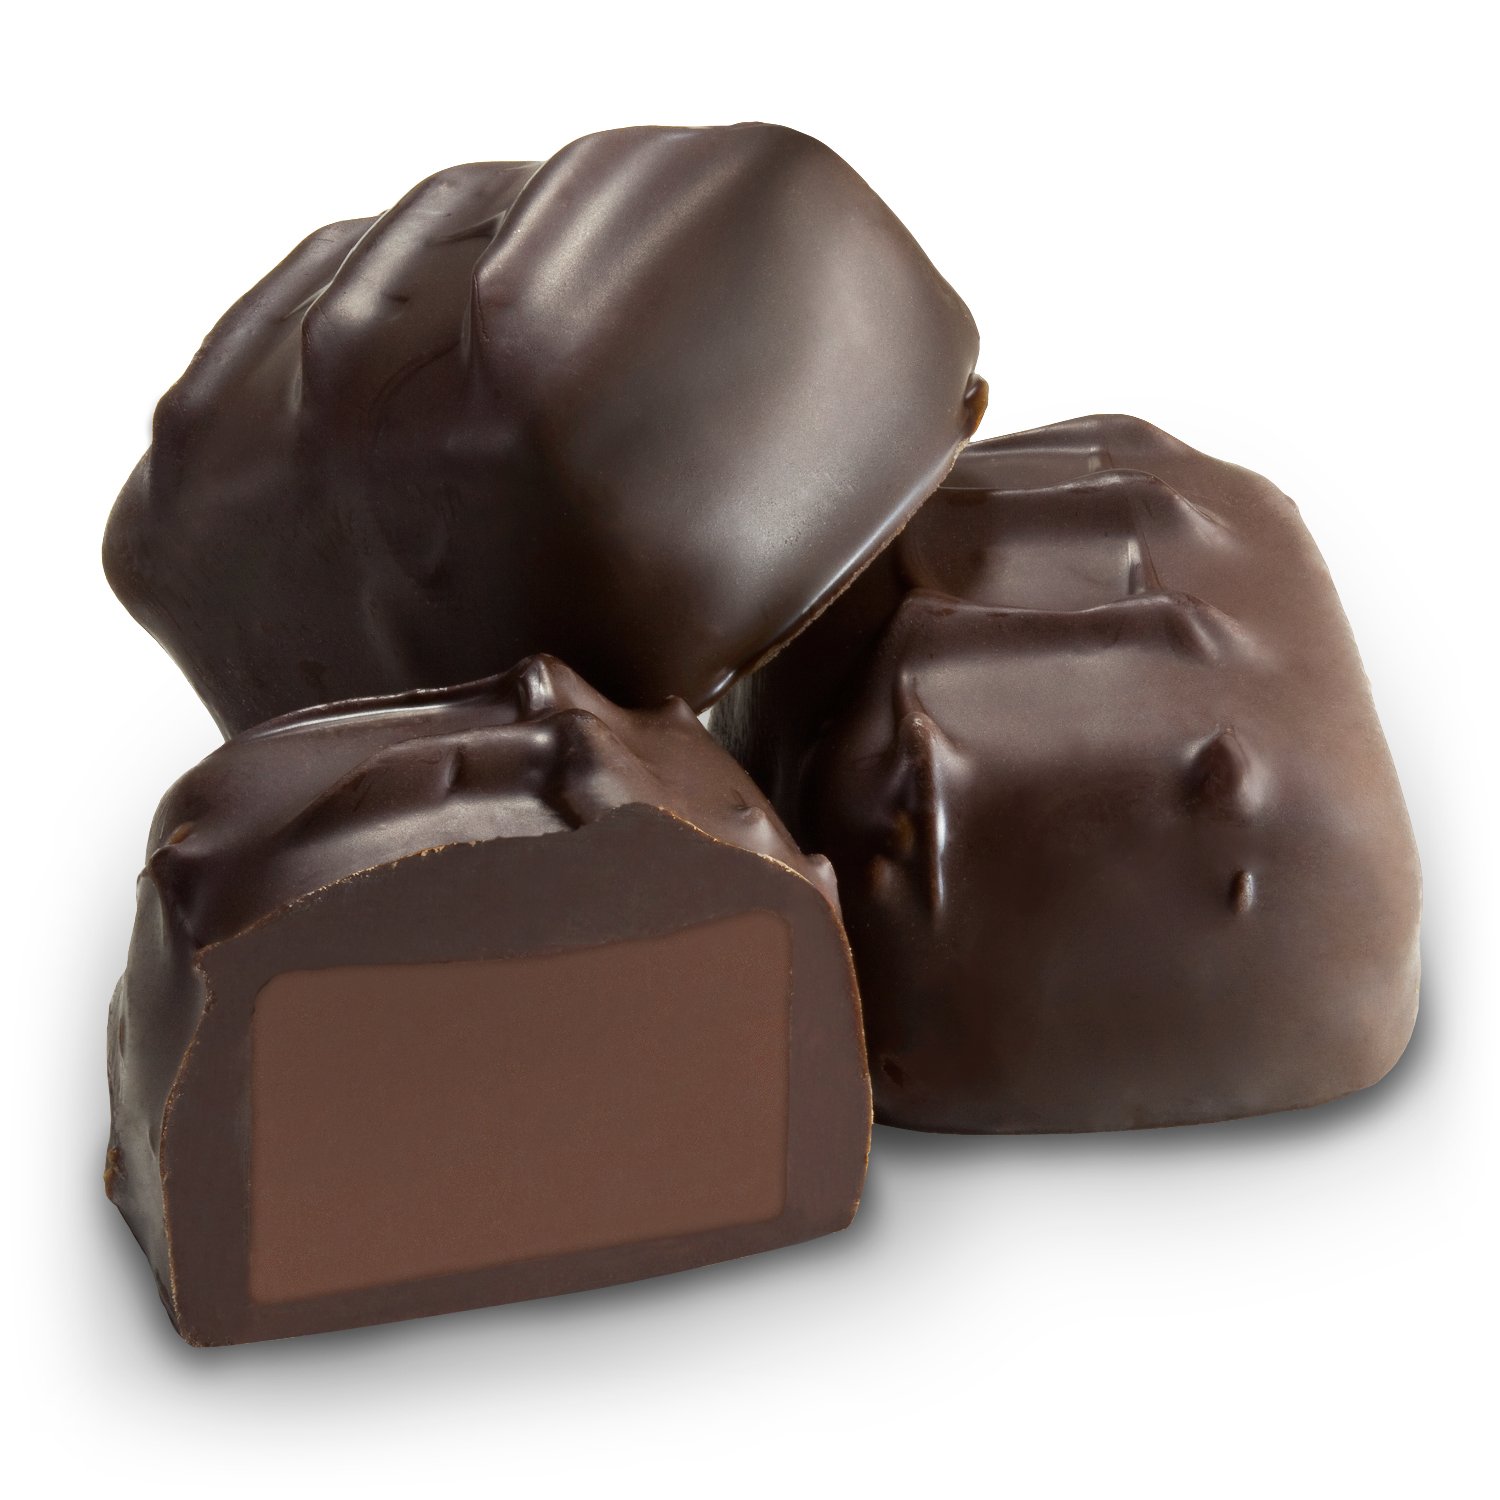 Заказать доставку шоколада. Шоколадные конфеты. Шоколад на белом фоне. Темный шоколад. Конфеты темный шоколад.